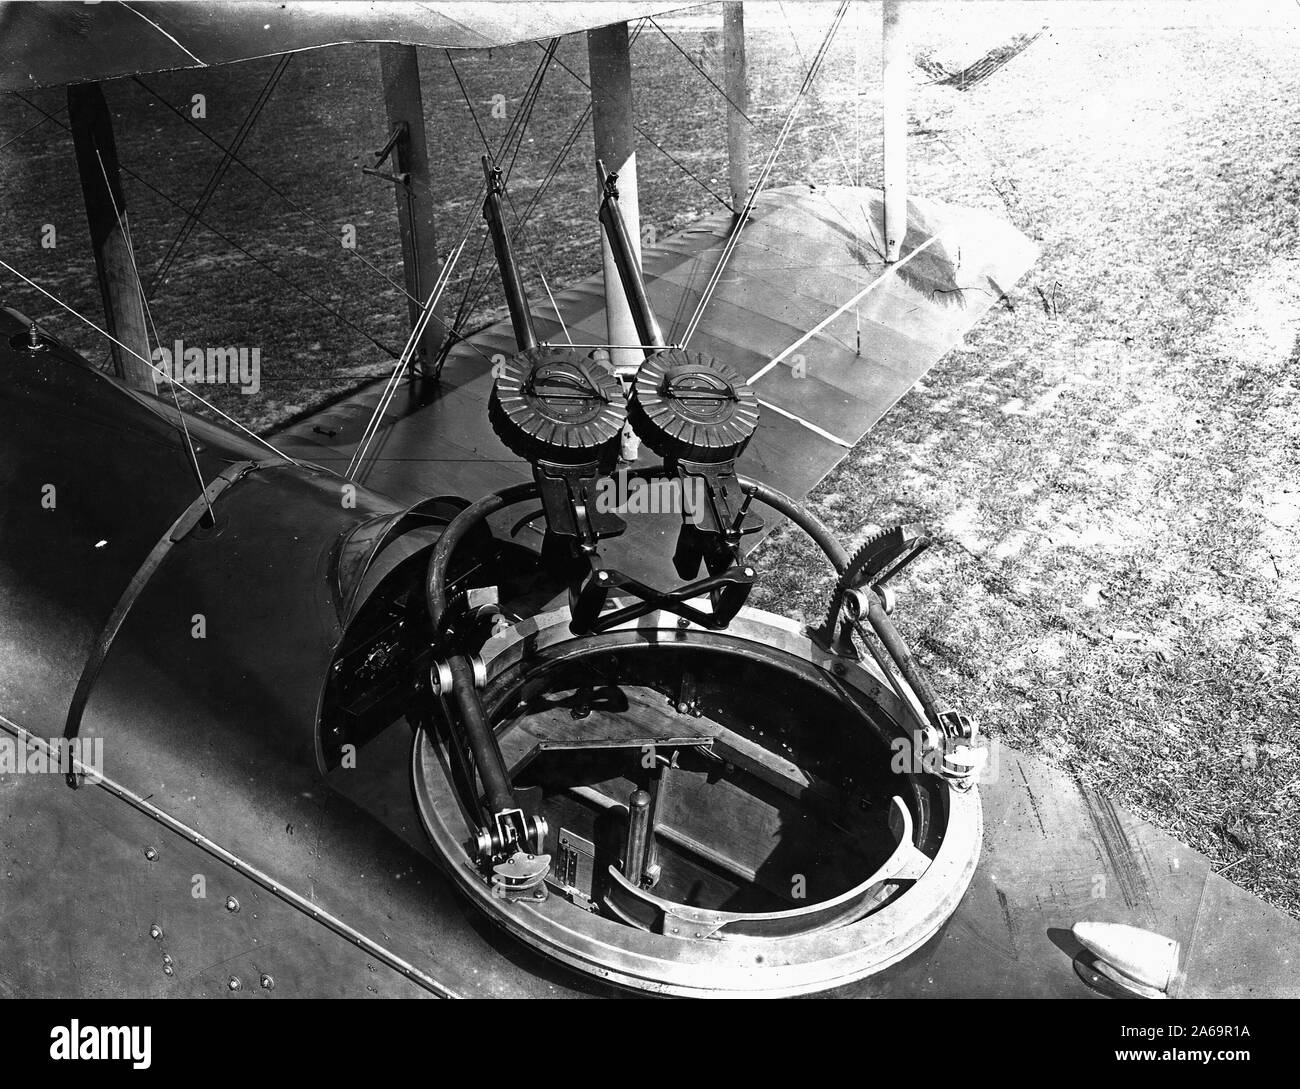 Blick auf De Haviland Ebene von der linken hinteren Viertel, in die gunner Cockpit suchen. 2 Montage von Lewis Guns. Venturi Luftgeschwindigkeit Messgerät auf Flügel 1918 Stütze montiert Stockfoto